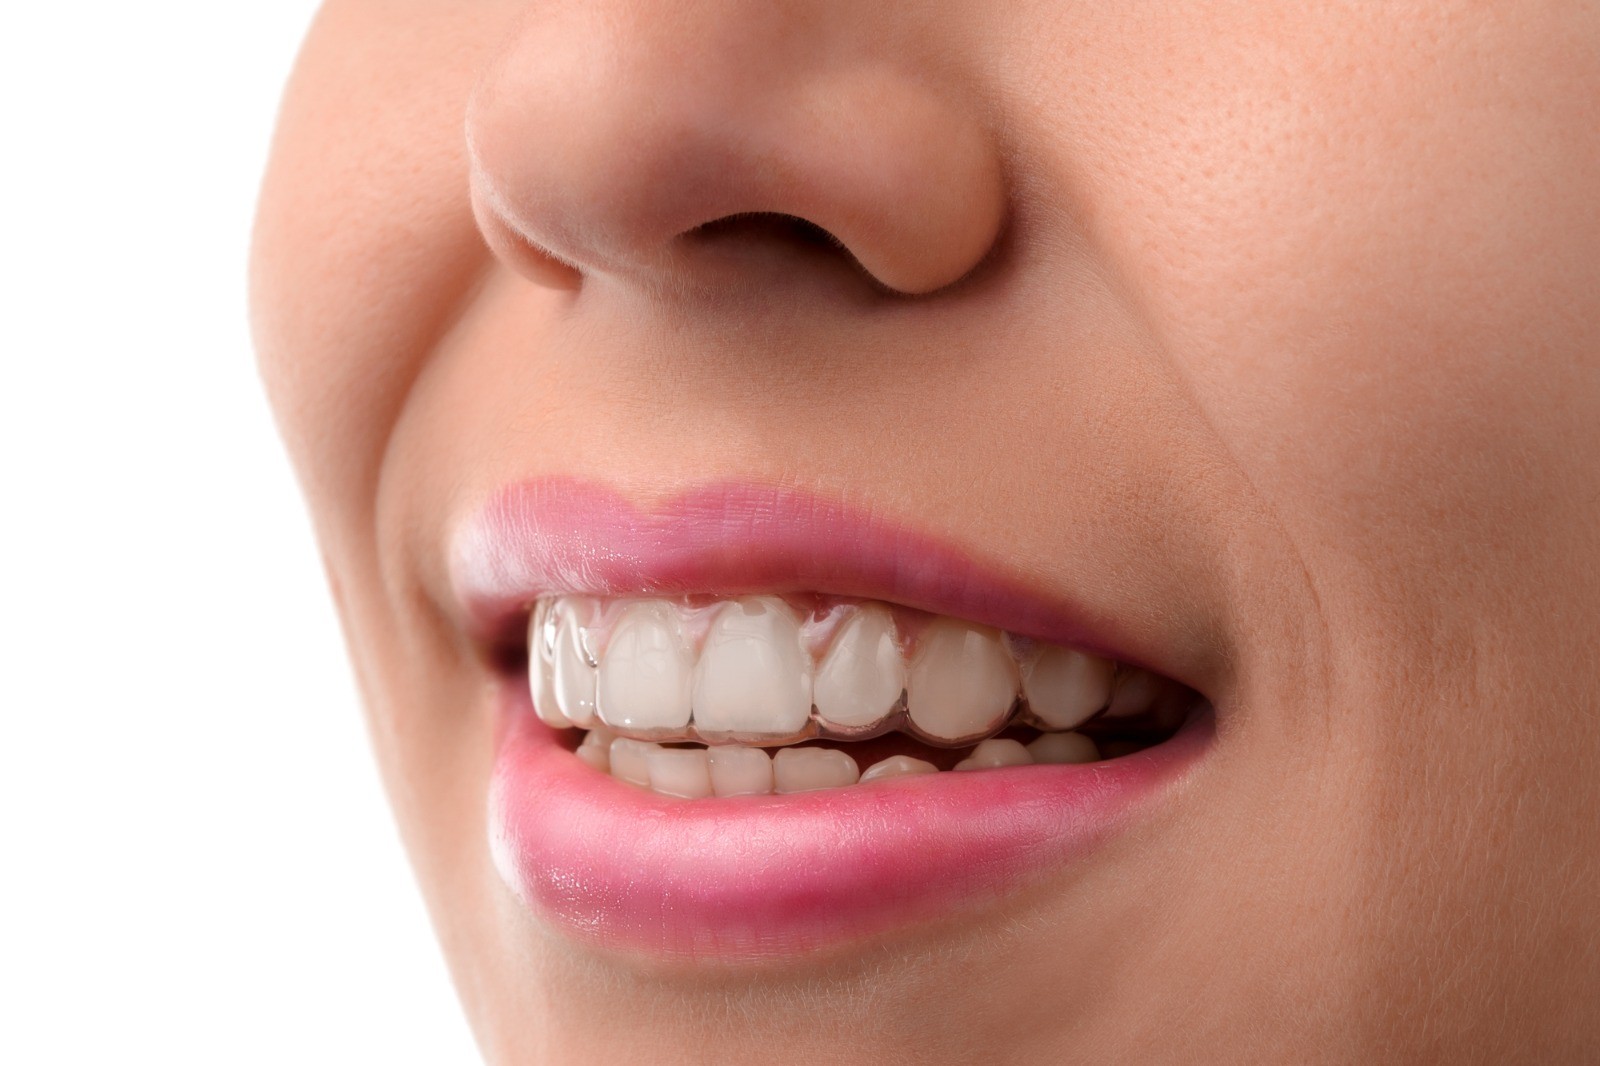 יישור שיניים באמצעות פלטות שקופות בלי שאף אחד יבחין שאתם בתהליך טיפול